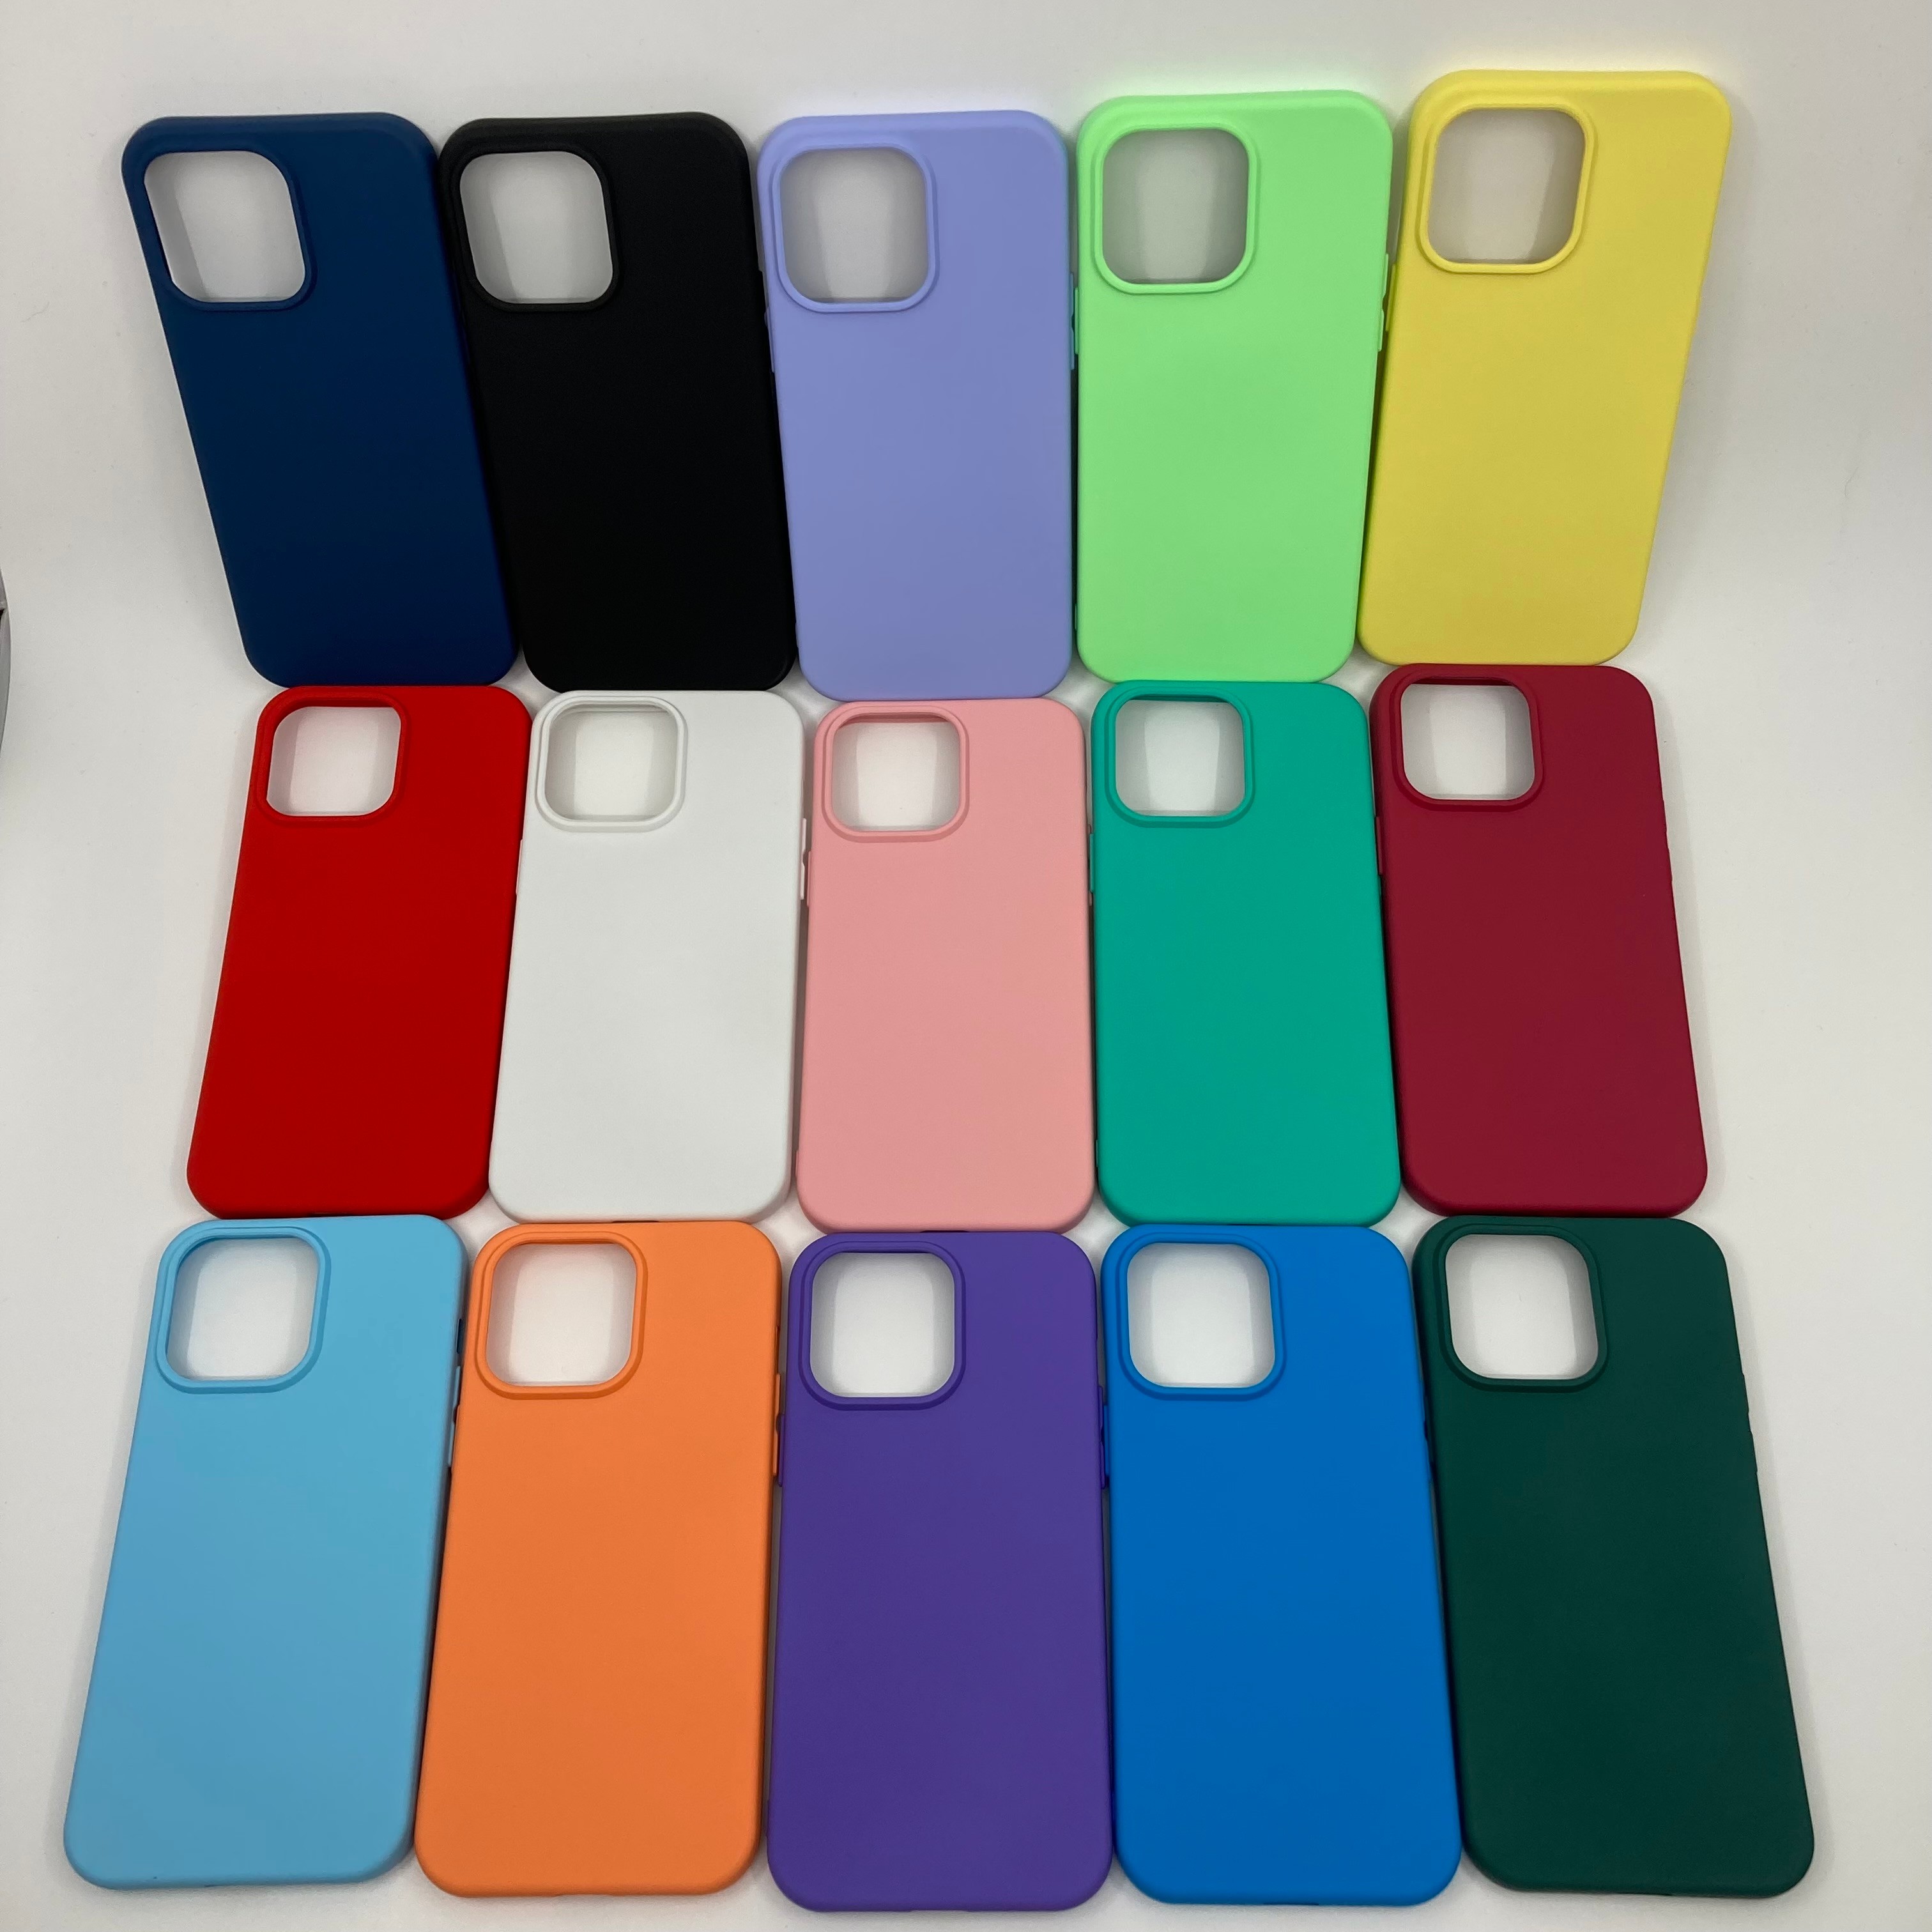 iPhone 14 Pro Max İçi Kadife Pastel Renk Silikon Kılıf